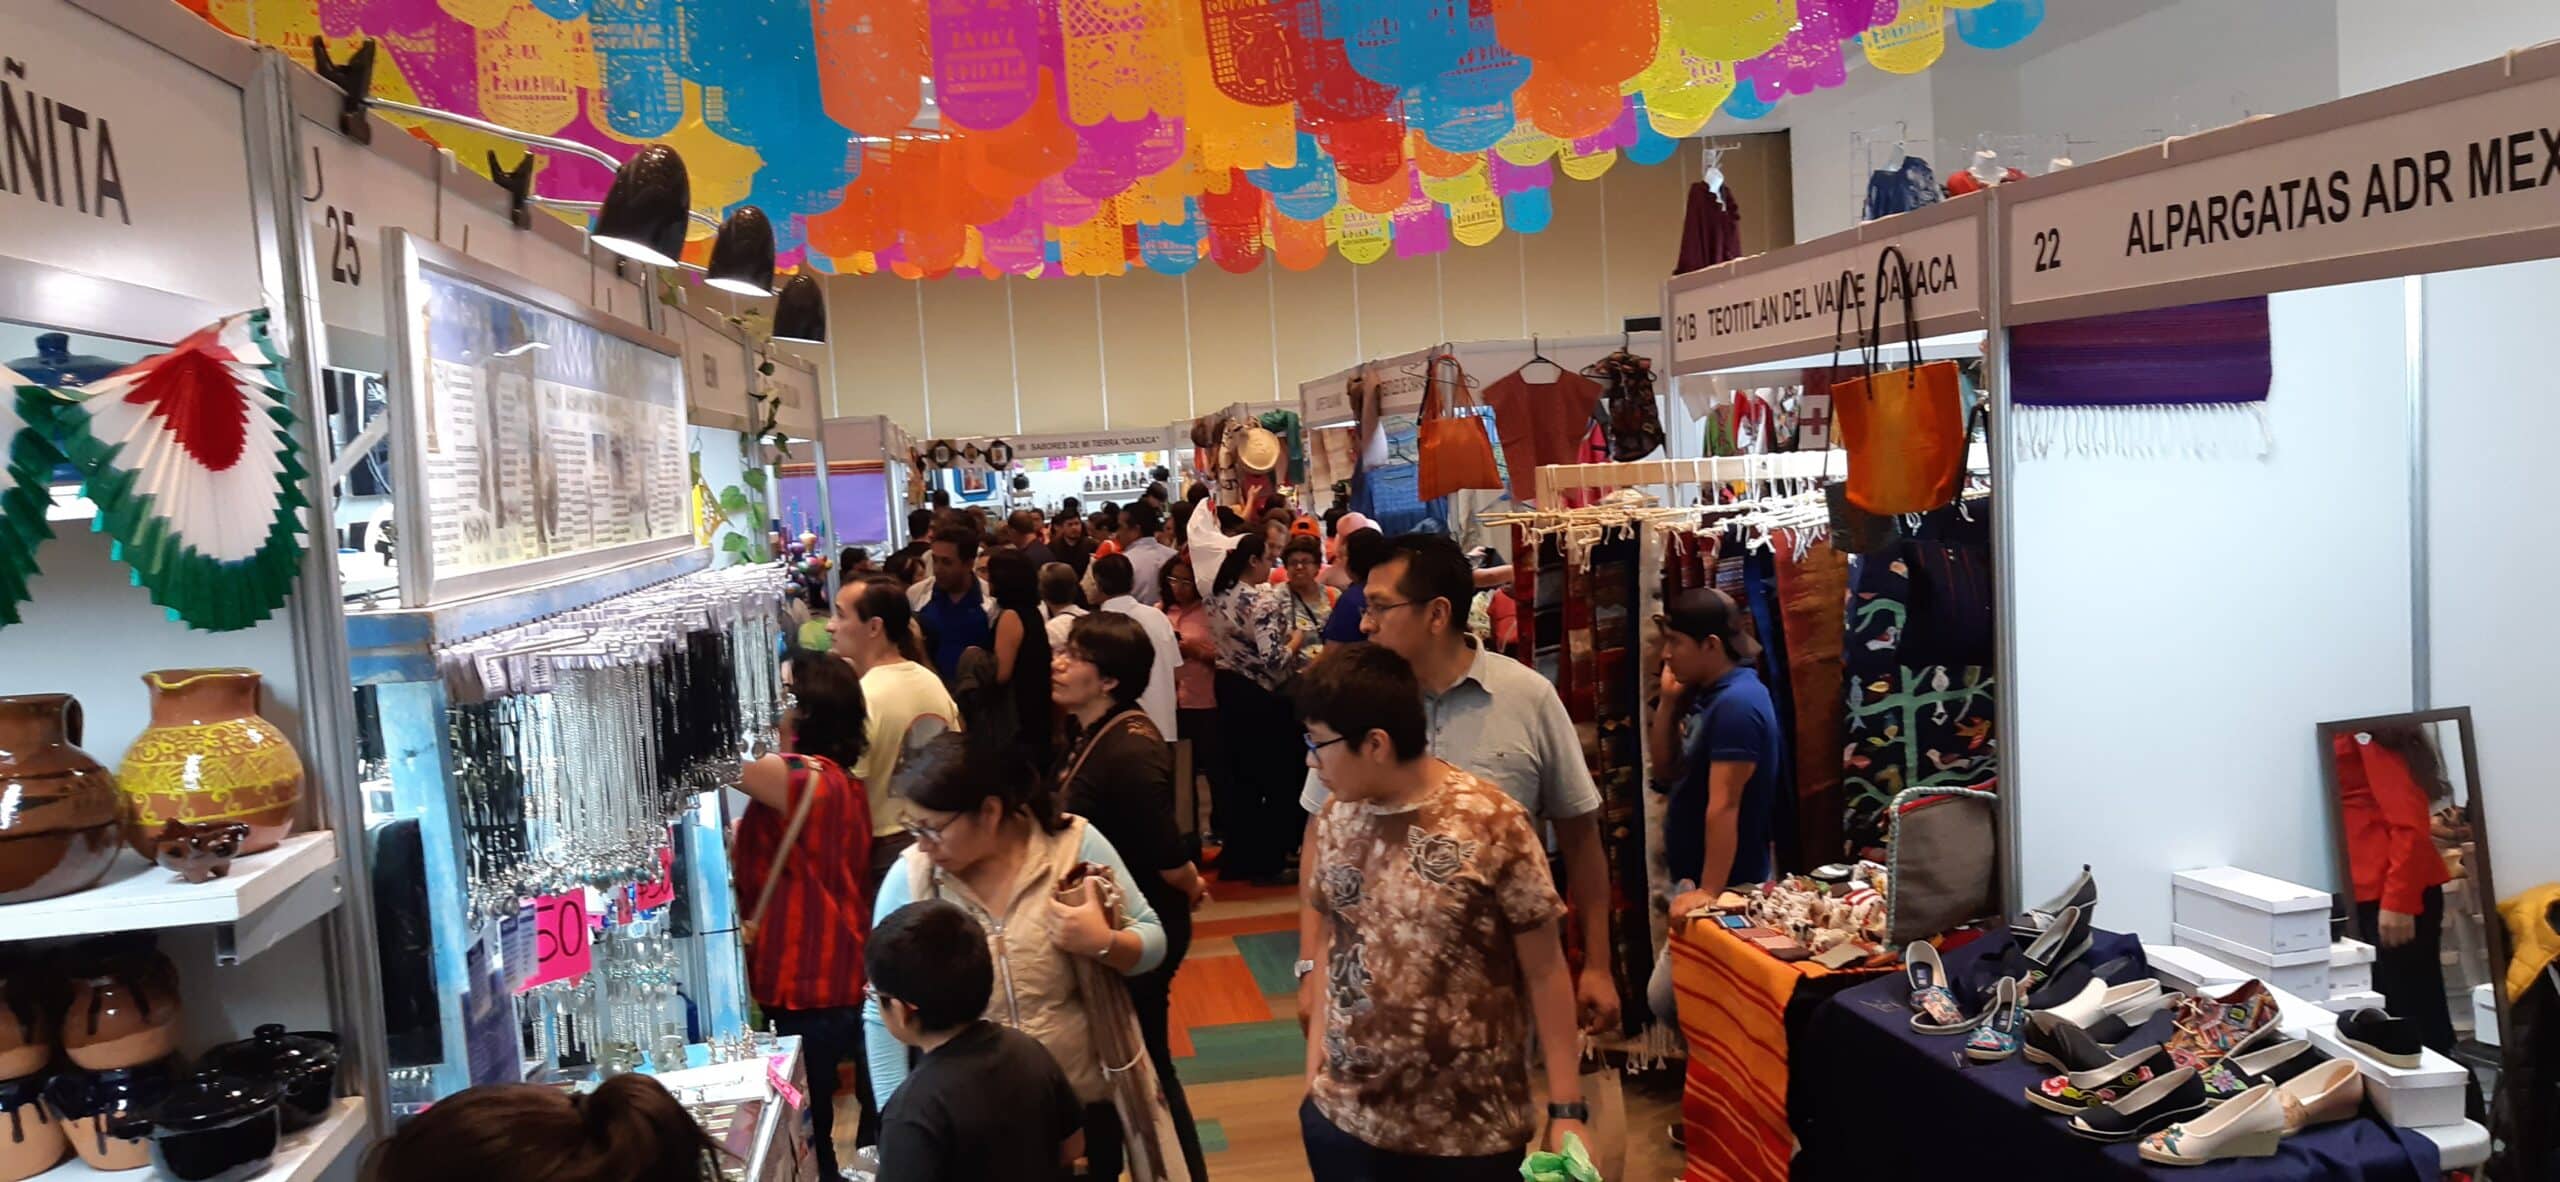 Feria del Mundo, experiencia multicultural en la CDMX